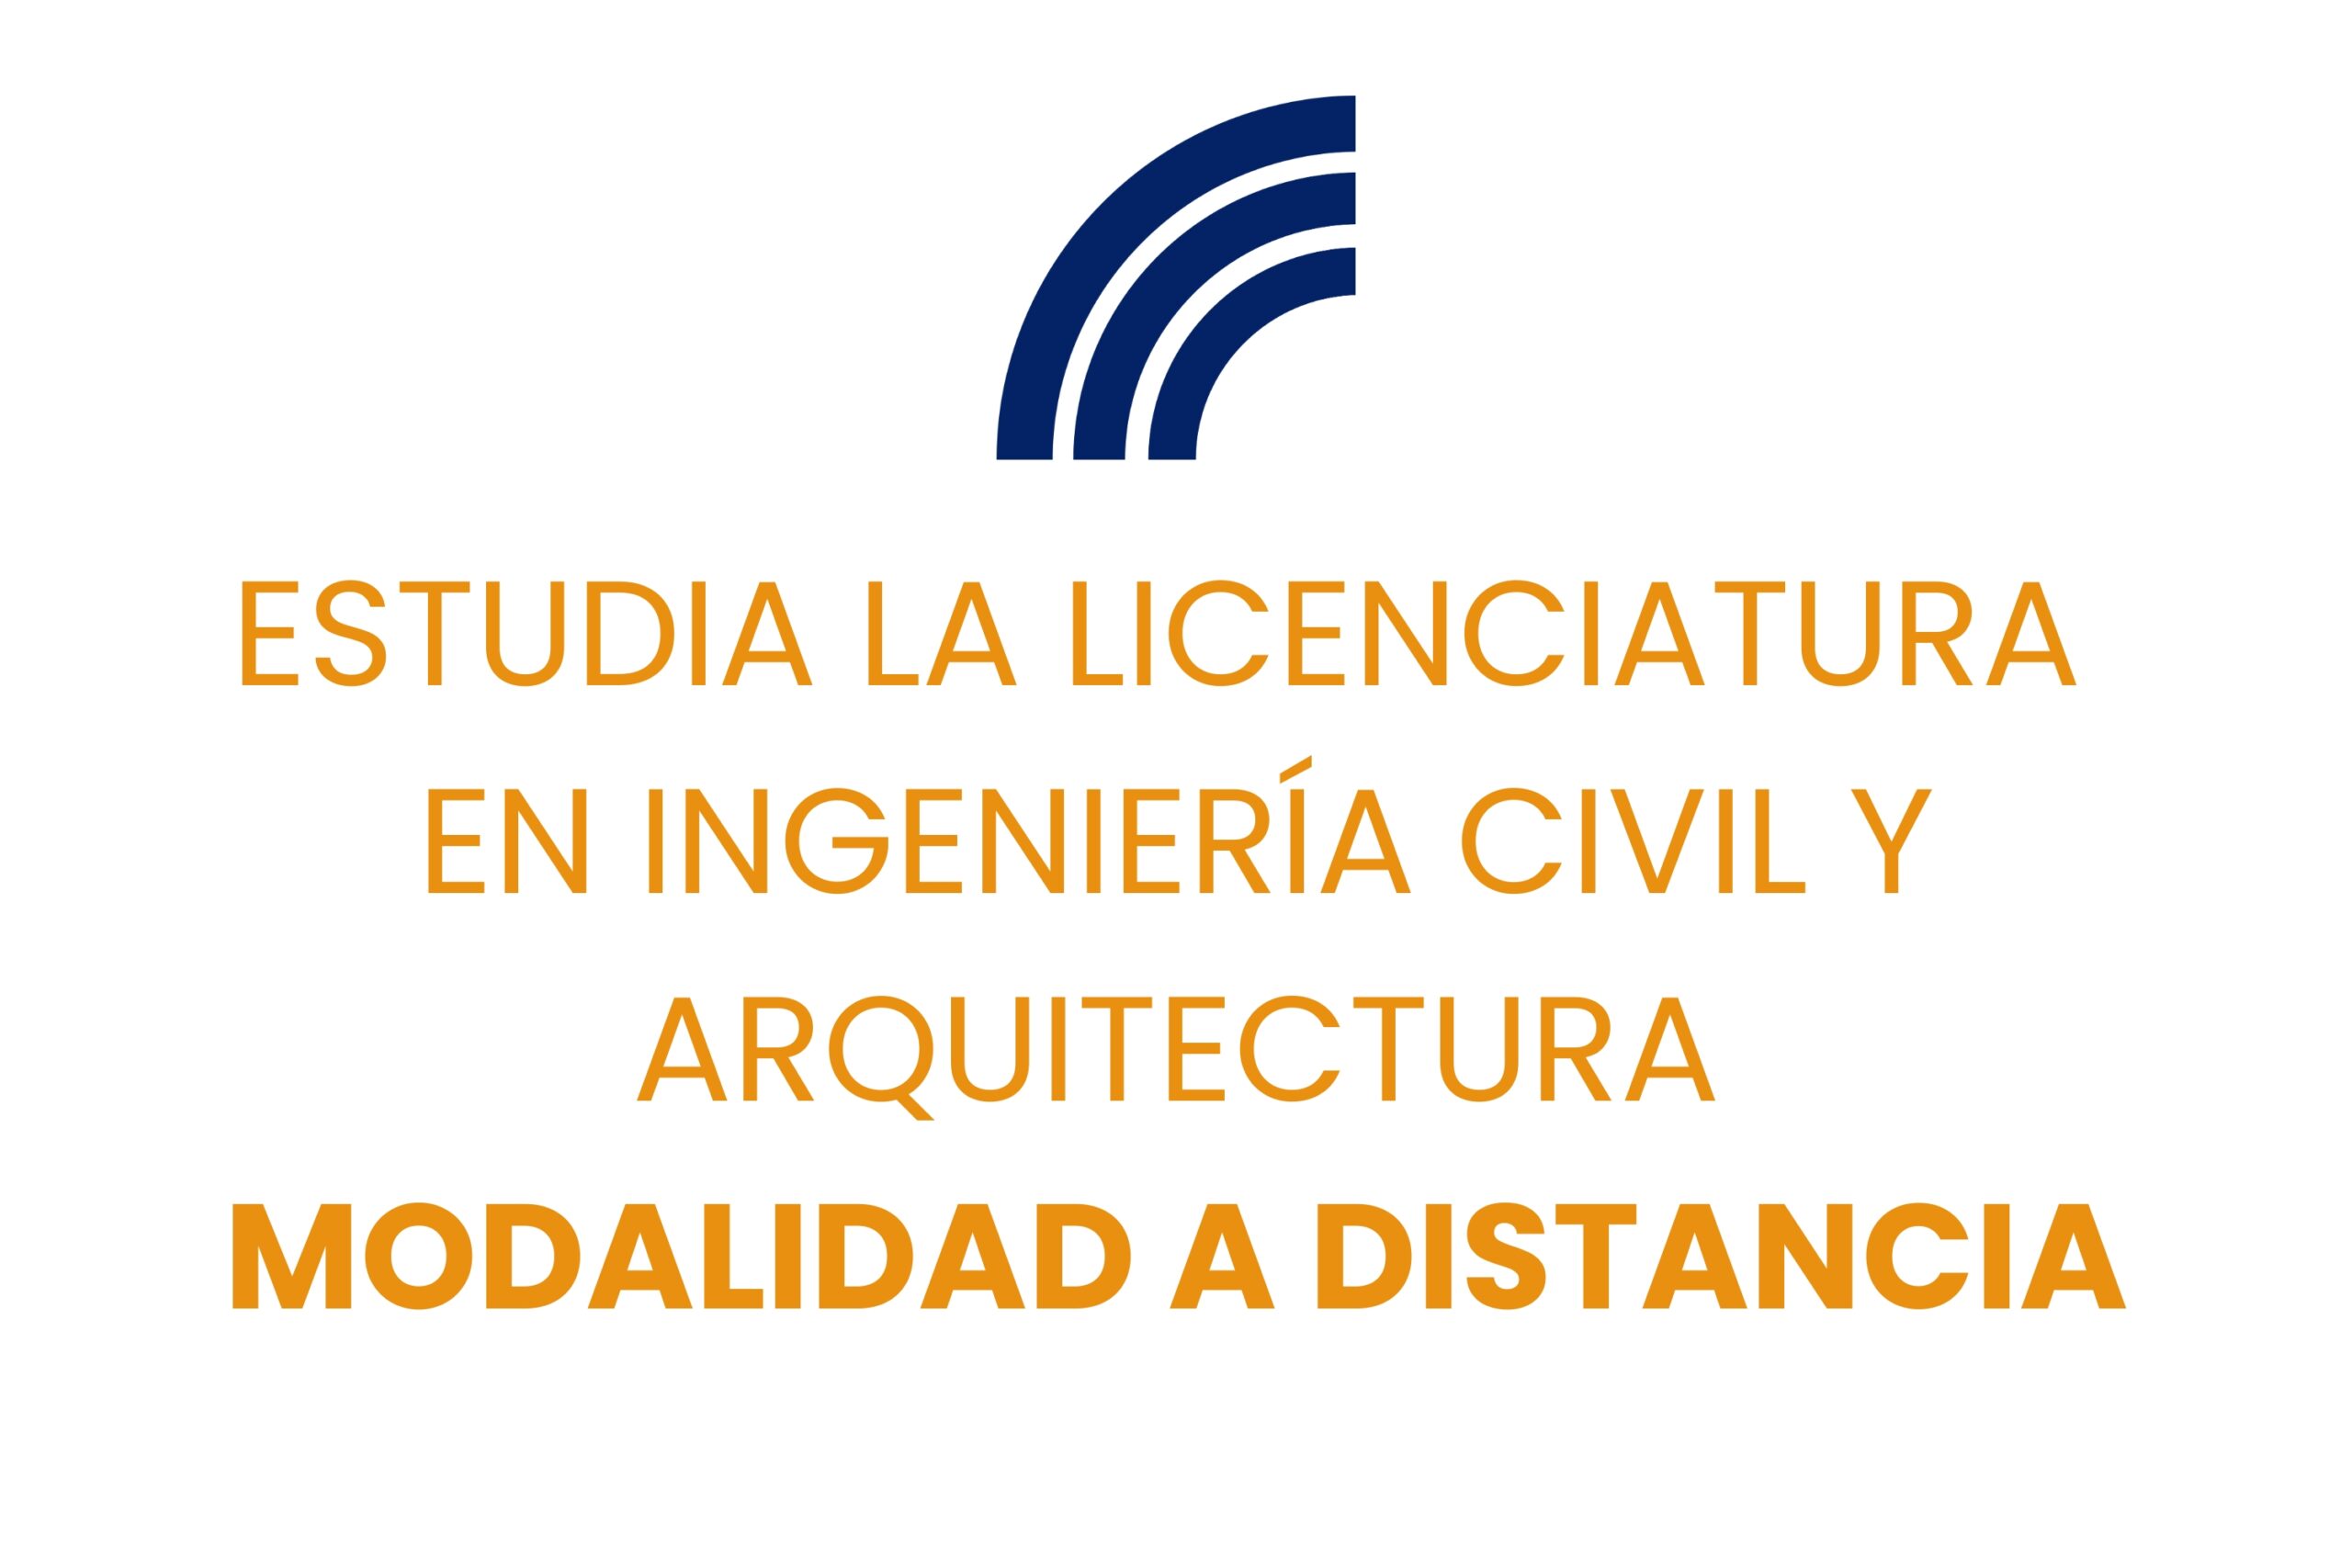 estudia la licenciatura en ingenieria civil y arquitectura a distancia mexico